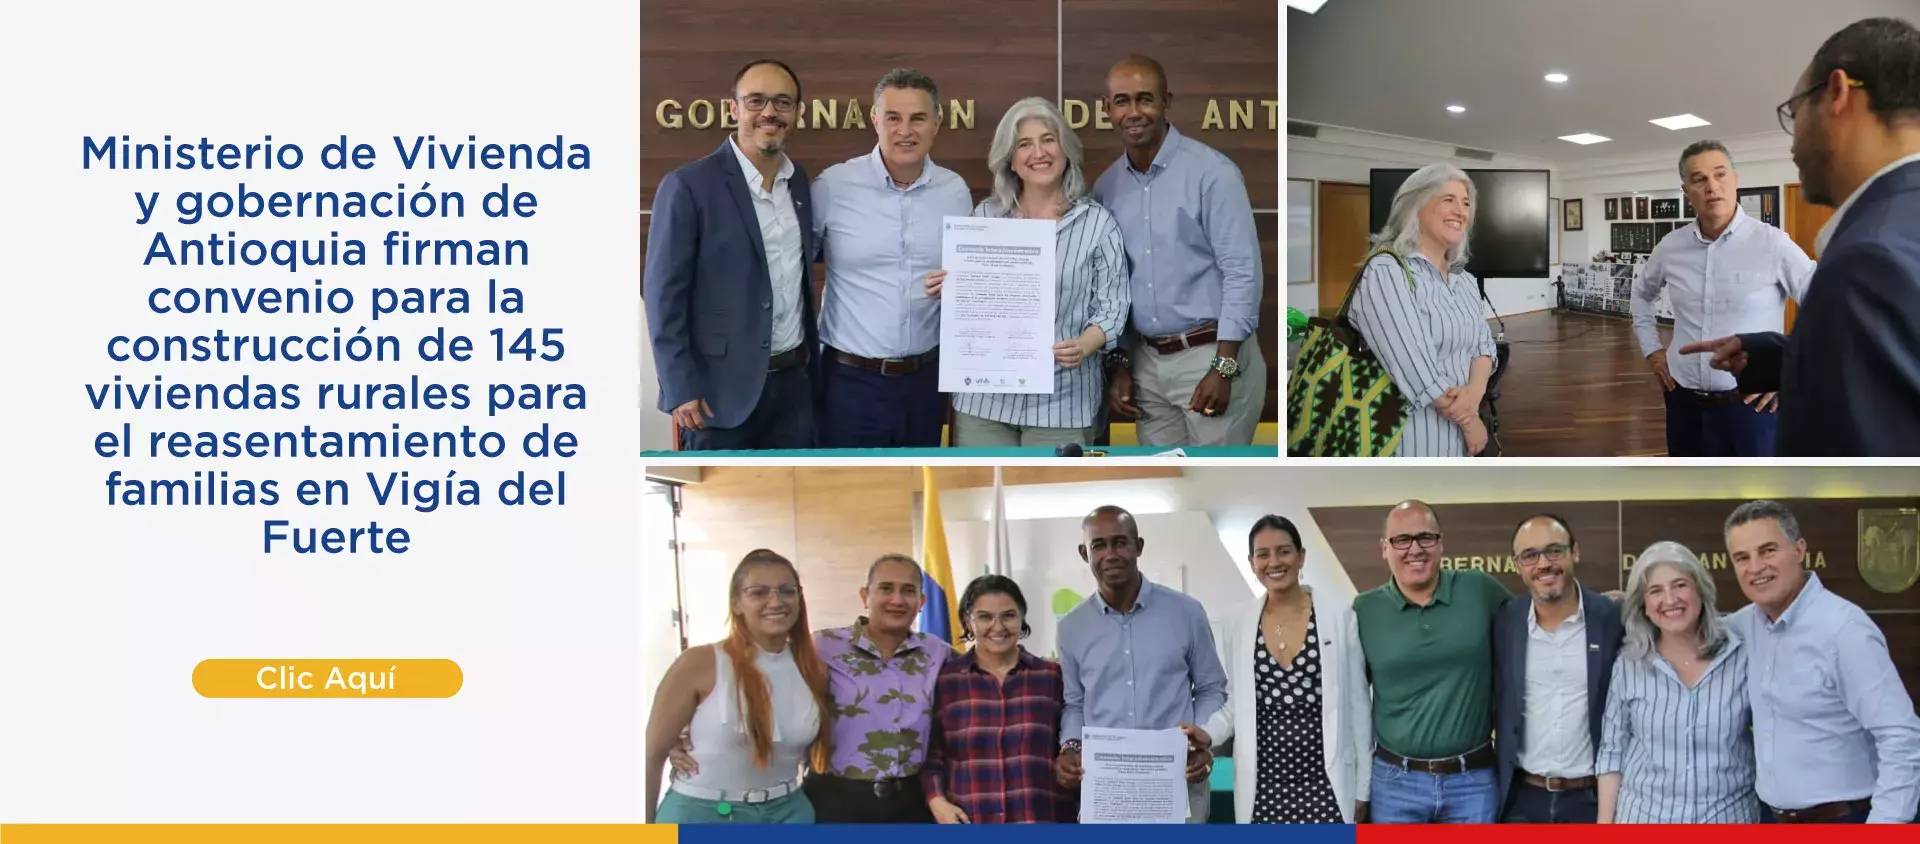 Ministerio de Vivienda y gobernación de Antioquia firman convenio para la construcción de 145 viviendas rurales para el reasentamiento de familias en Vigía del Fuerte